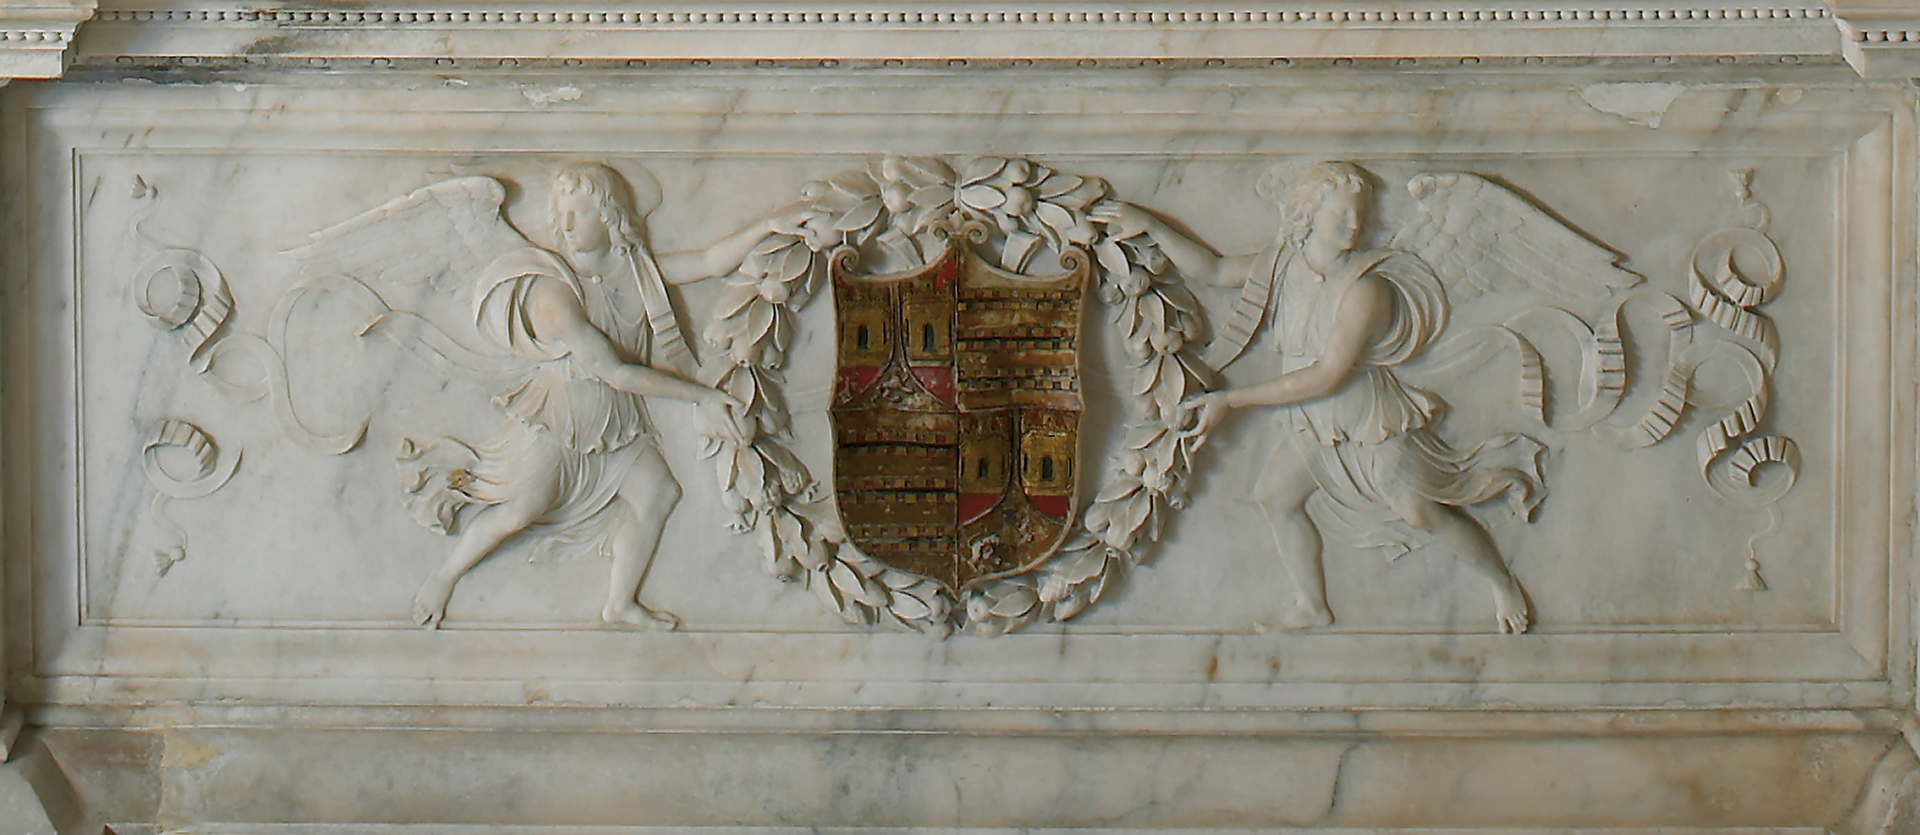 Escudo del Sepulcro de don Pedro Enríquez, Adelantado Mayor de Andalucía. Cartuja de las Cuevas, Sevilla. Fundación Casa Ducal de Medinaceli